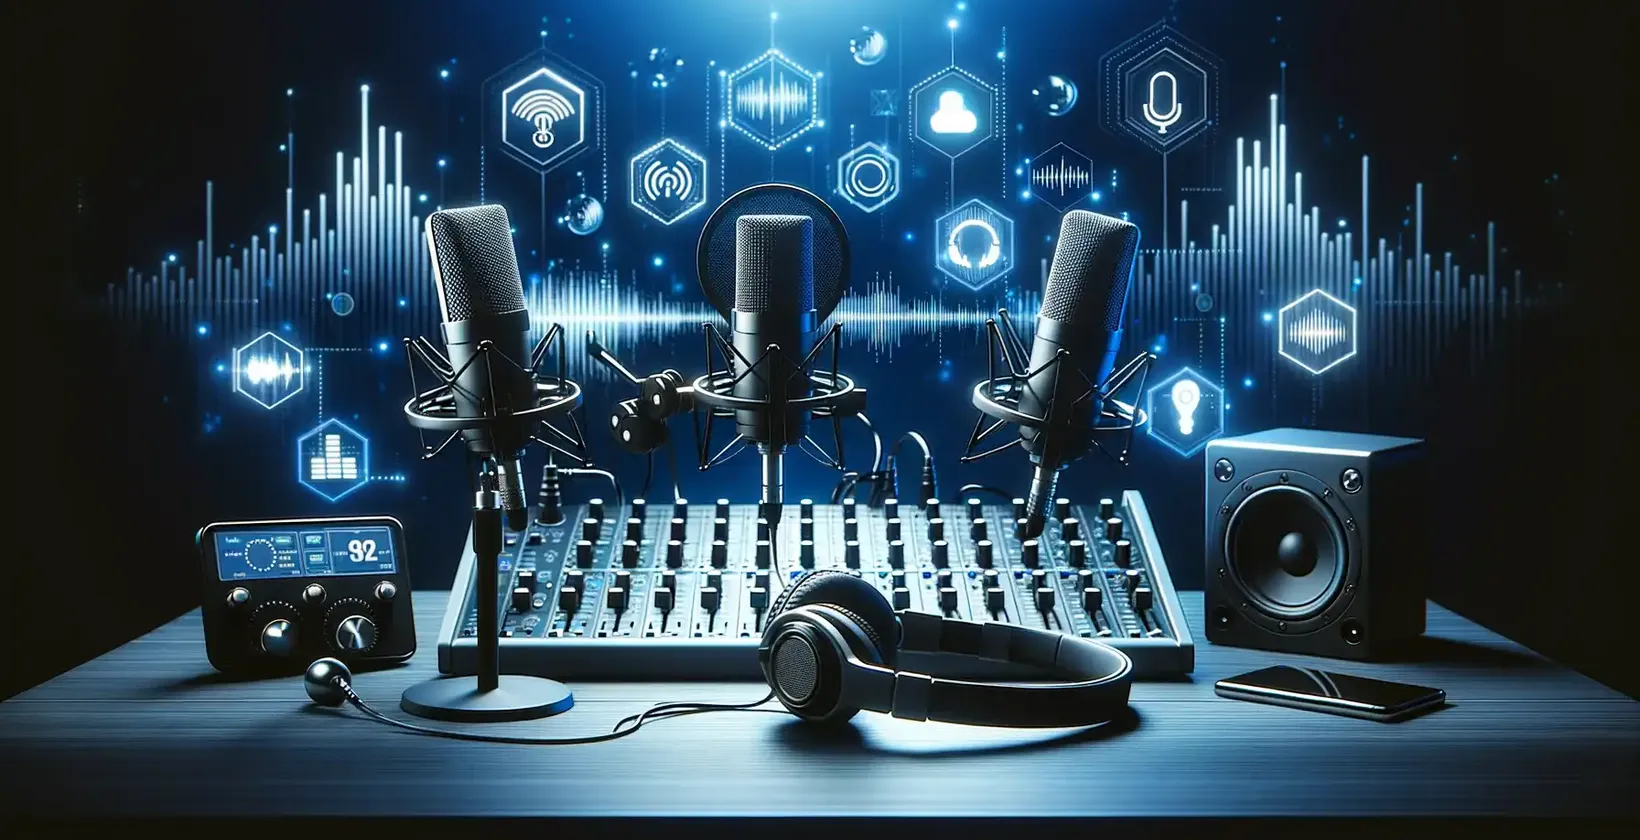 Thiết bị âm thanh và micrô được đặt trên bàn để sao chép podcast, một chiến lược để thu hút nhiều khách hàng hơn.